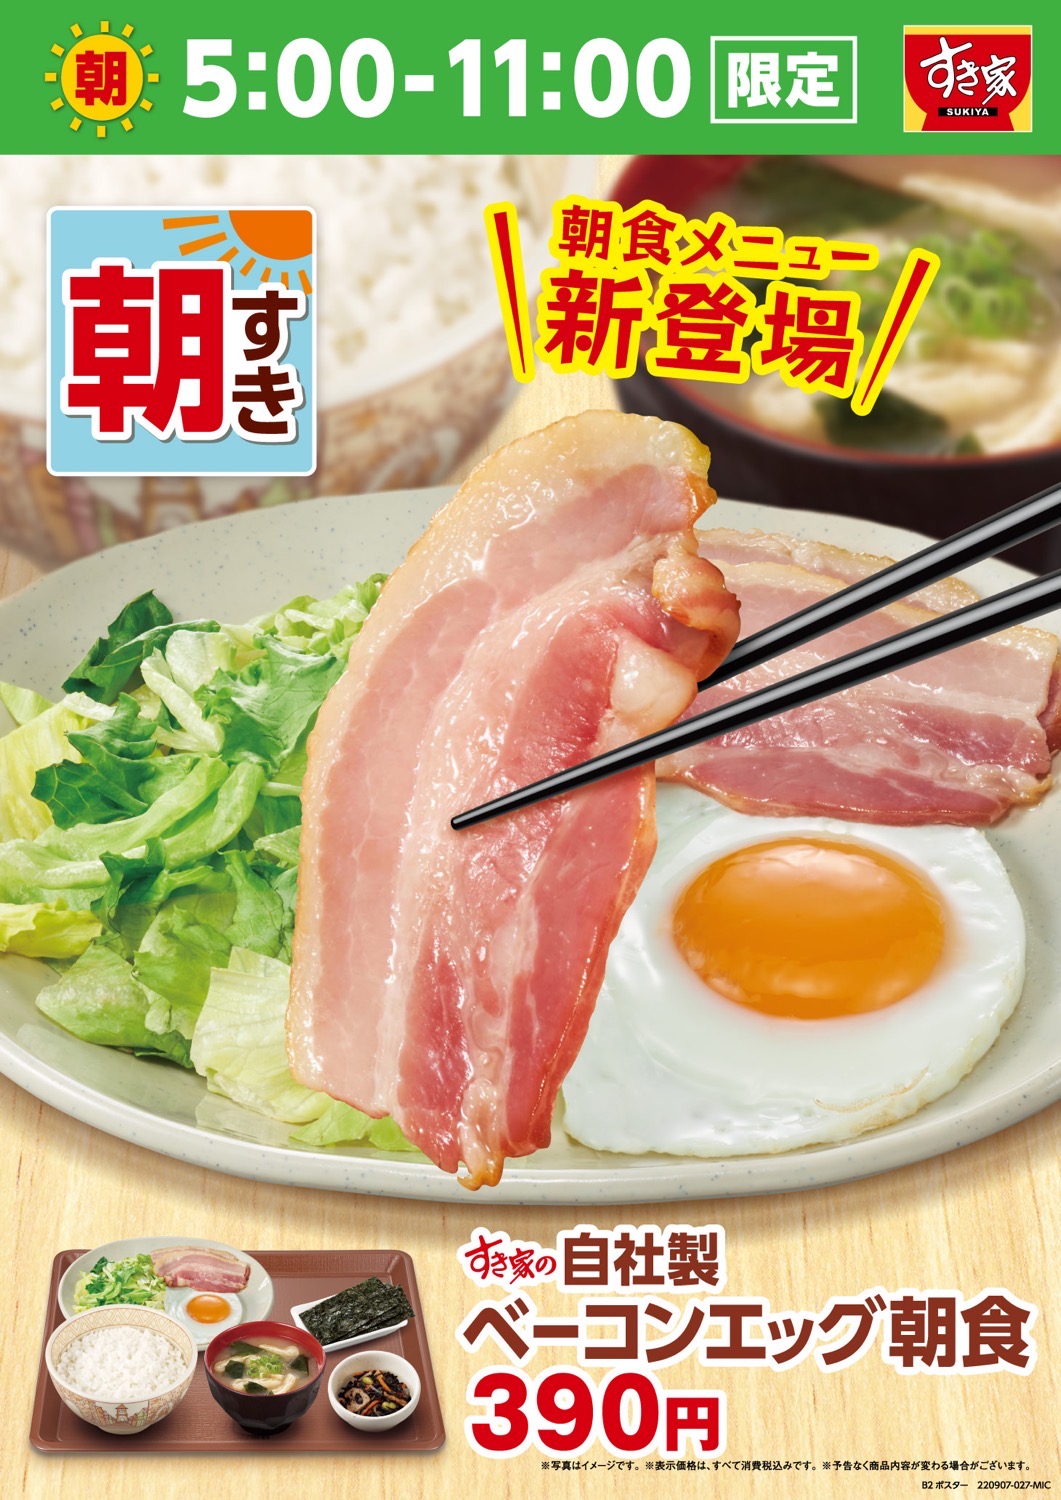 Sukiya bacon egg 13000